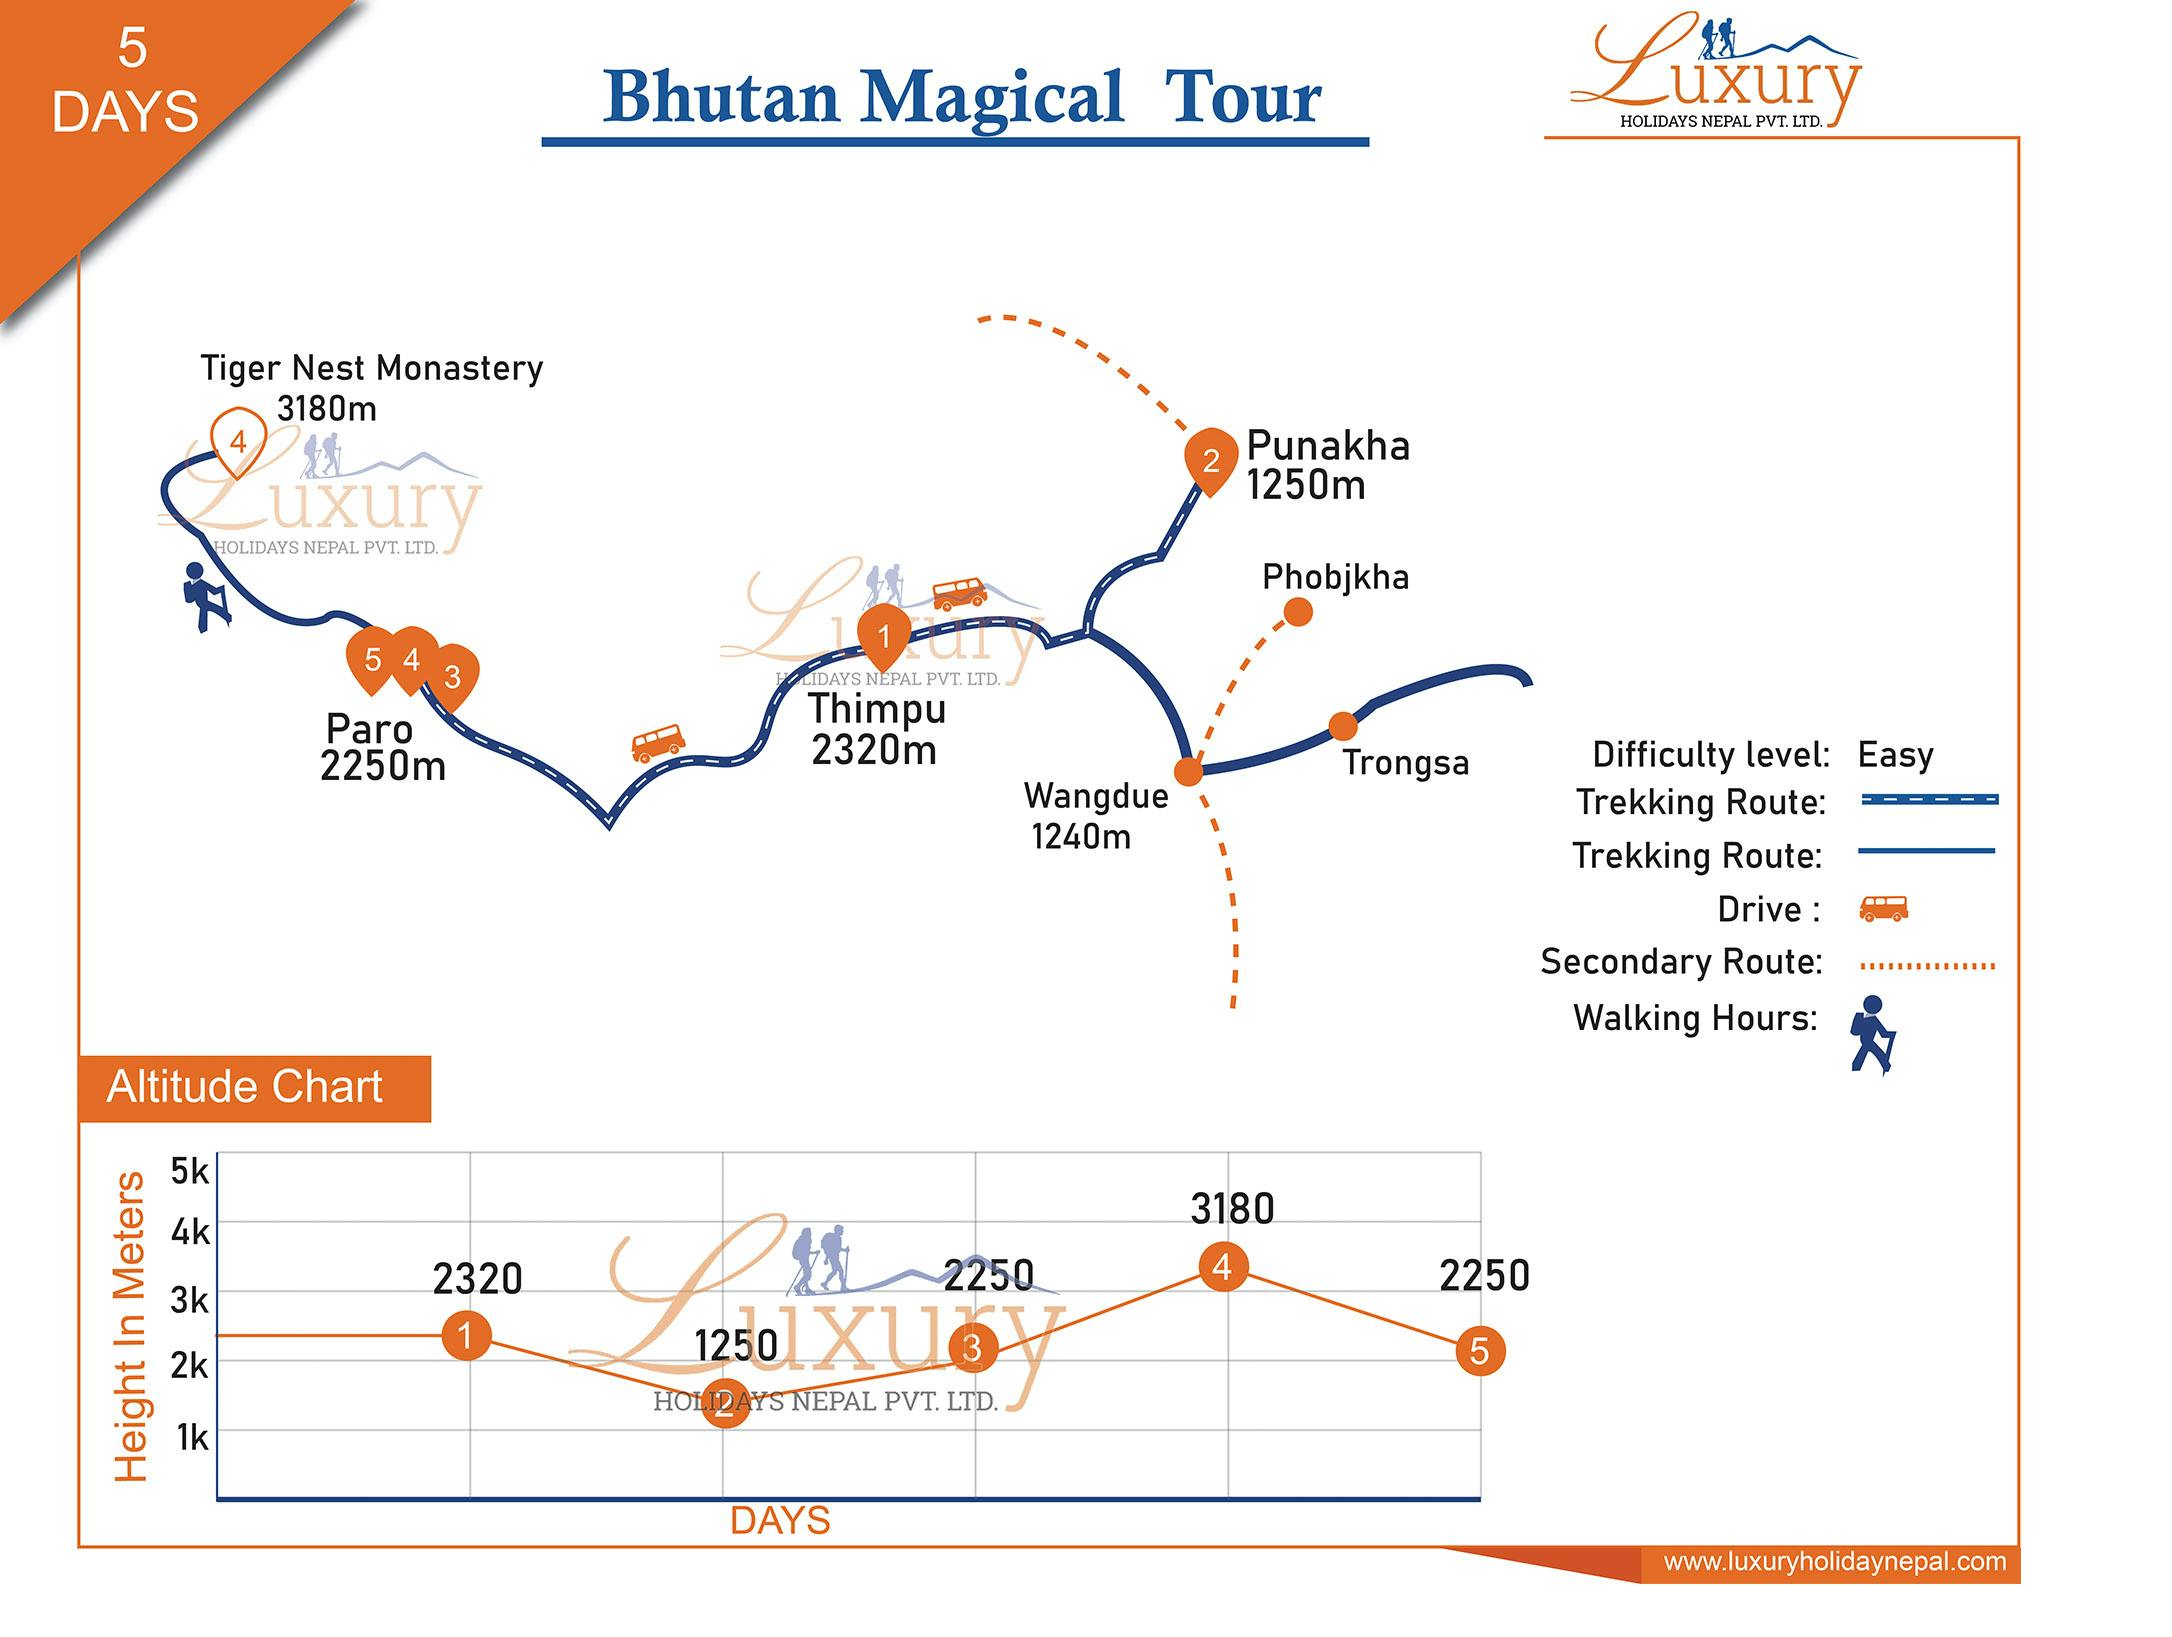 Bhutan Magical Tour - 5 DaysMap